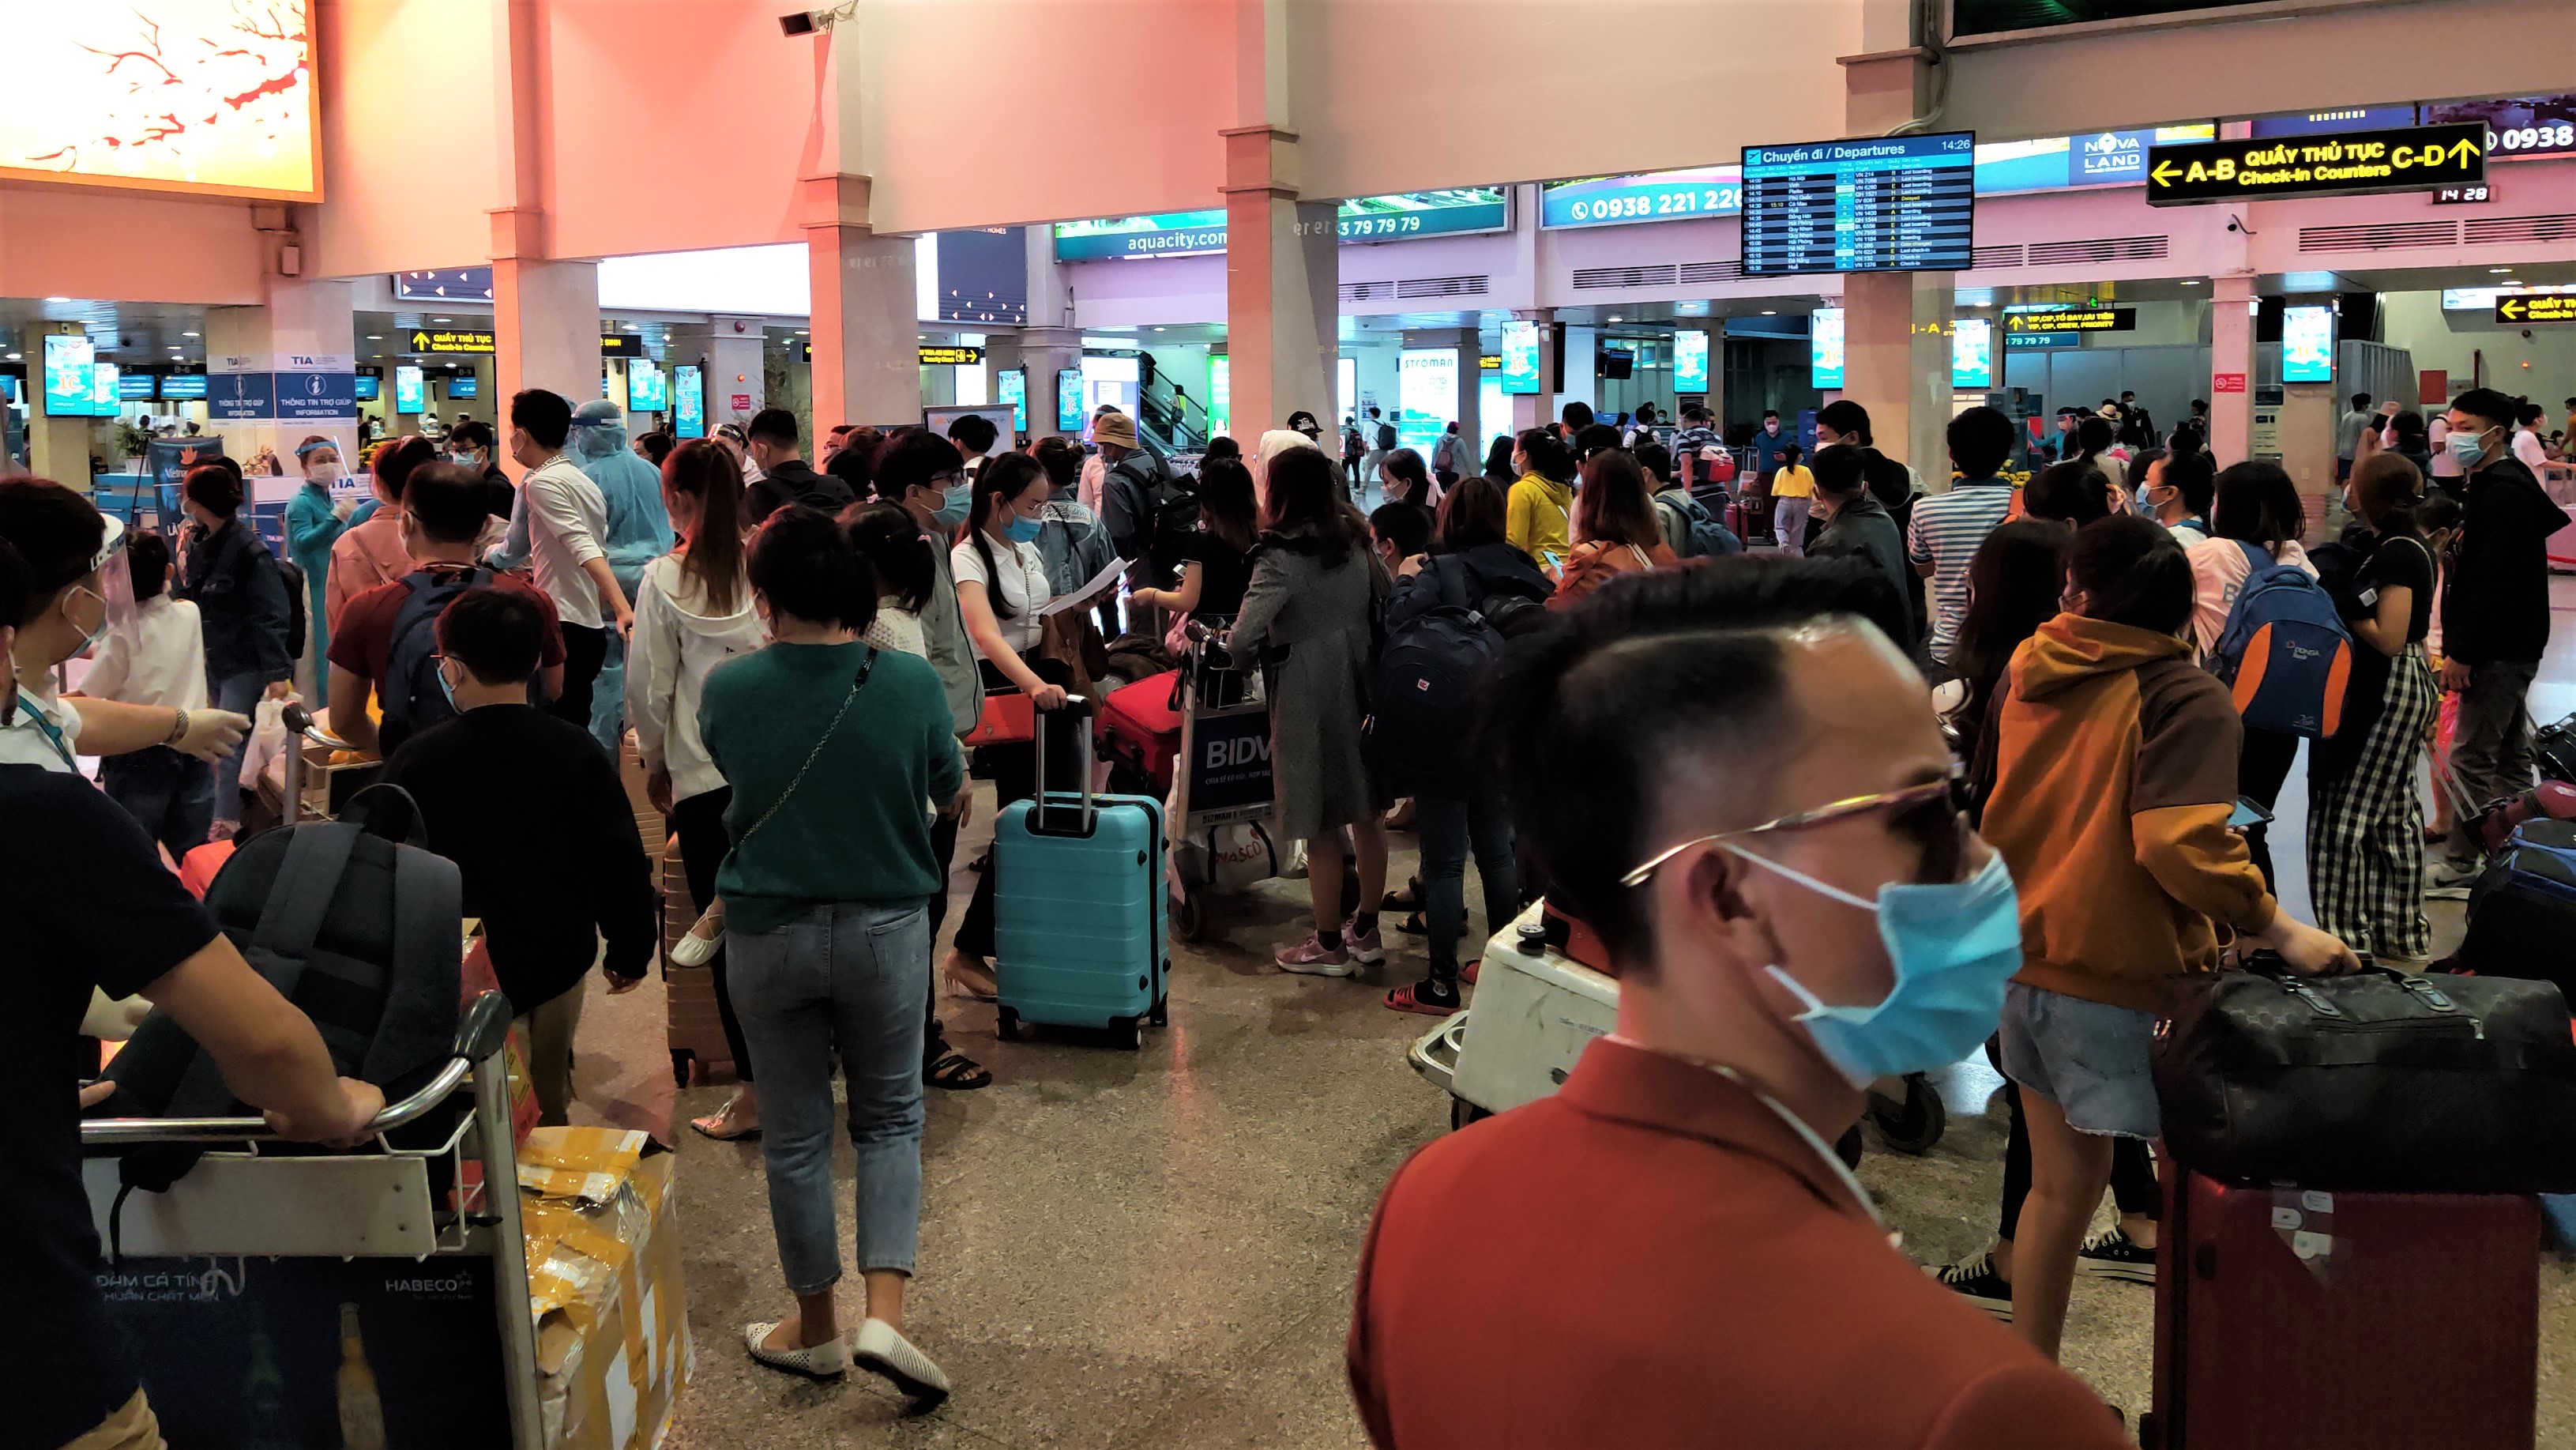 Sân bay Tân Sân Nhất tuy đông nhưng mọi người đều ý thức việc đeo khẩu trang phòng dịch